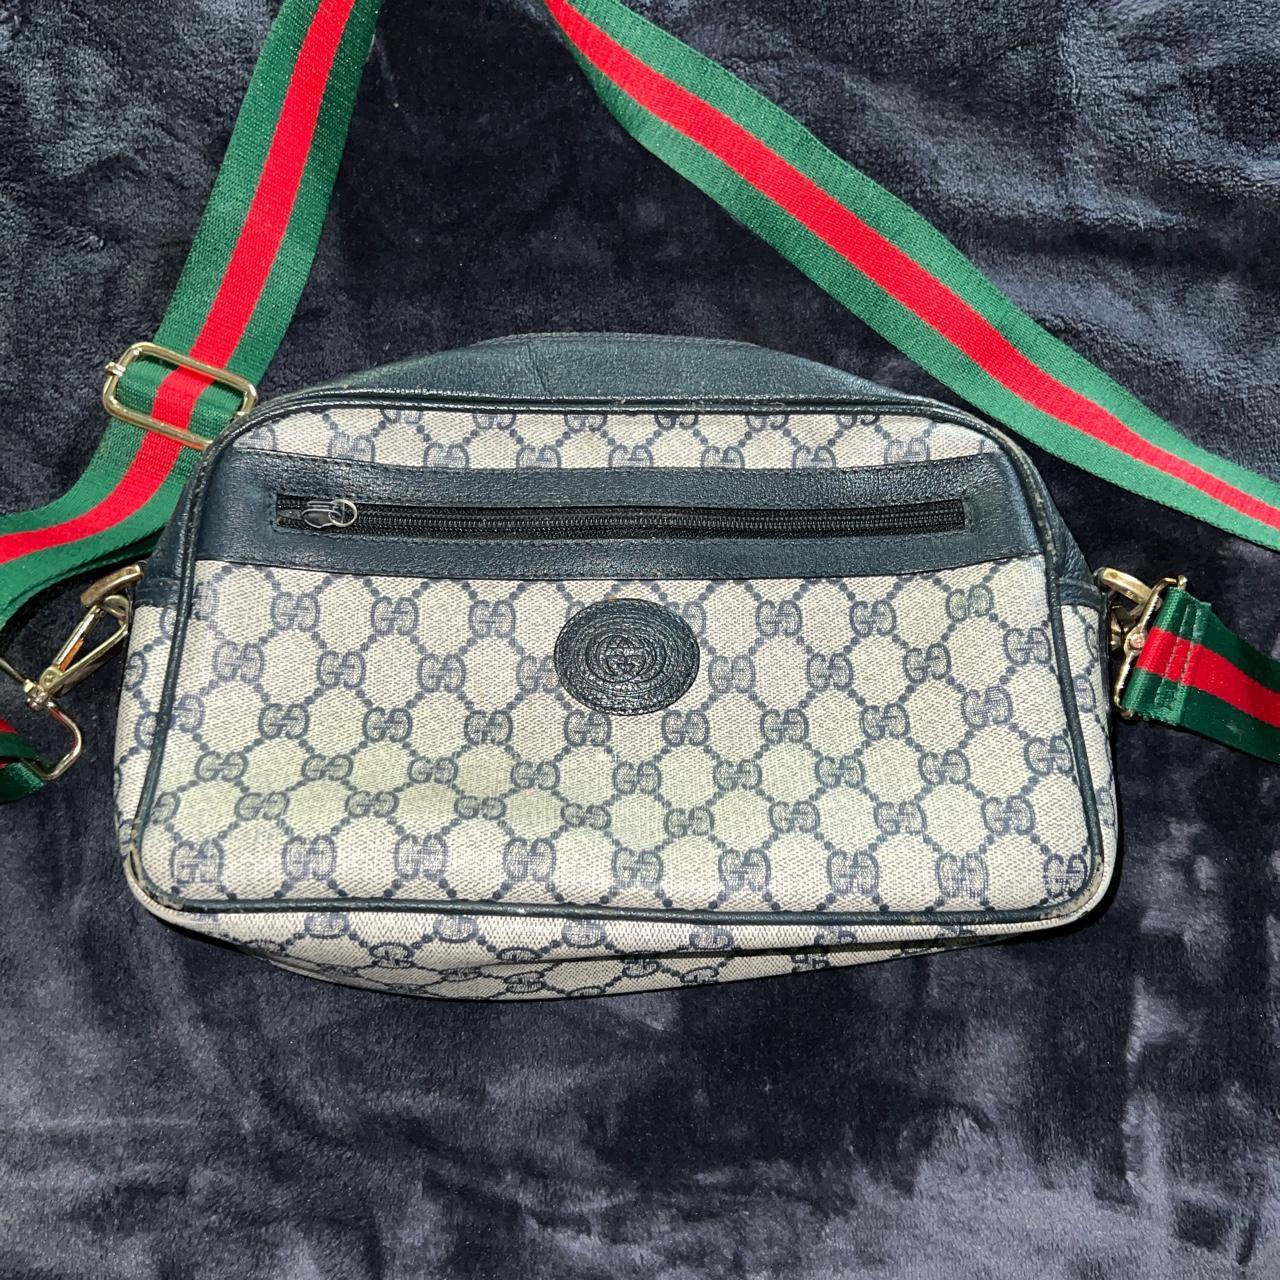 Vintage Gucci crossbody sling bag Something for the - Depop